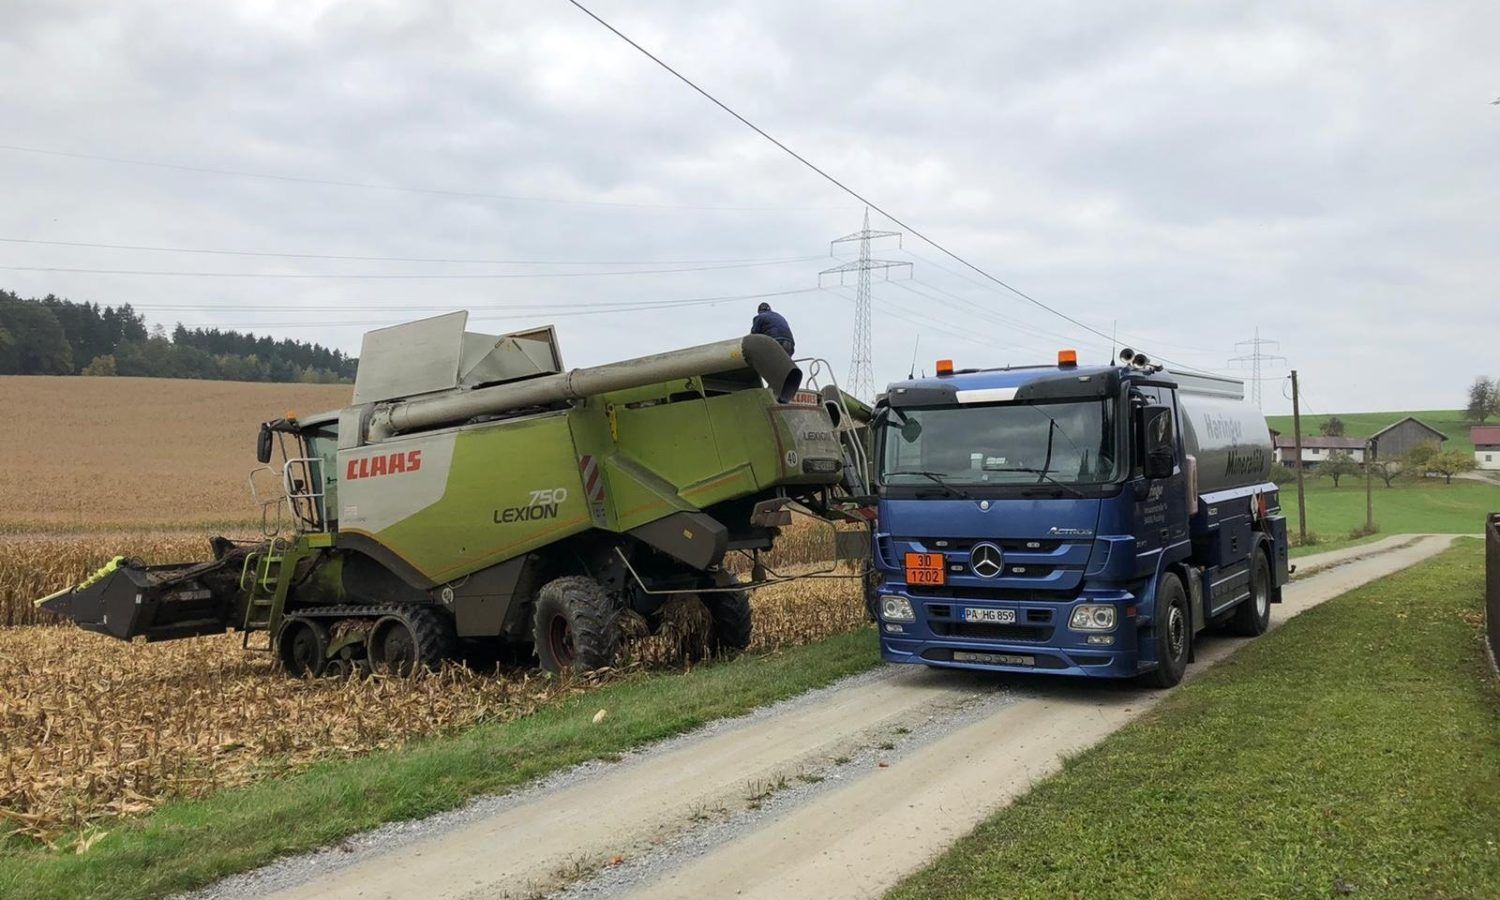 LKW und landwirtschaftliches Fahrzeug von Haringer Mineralöle und Transporte GmbH im Feld